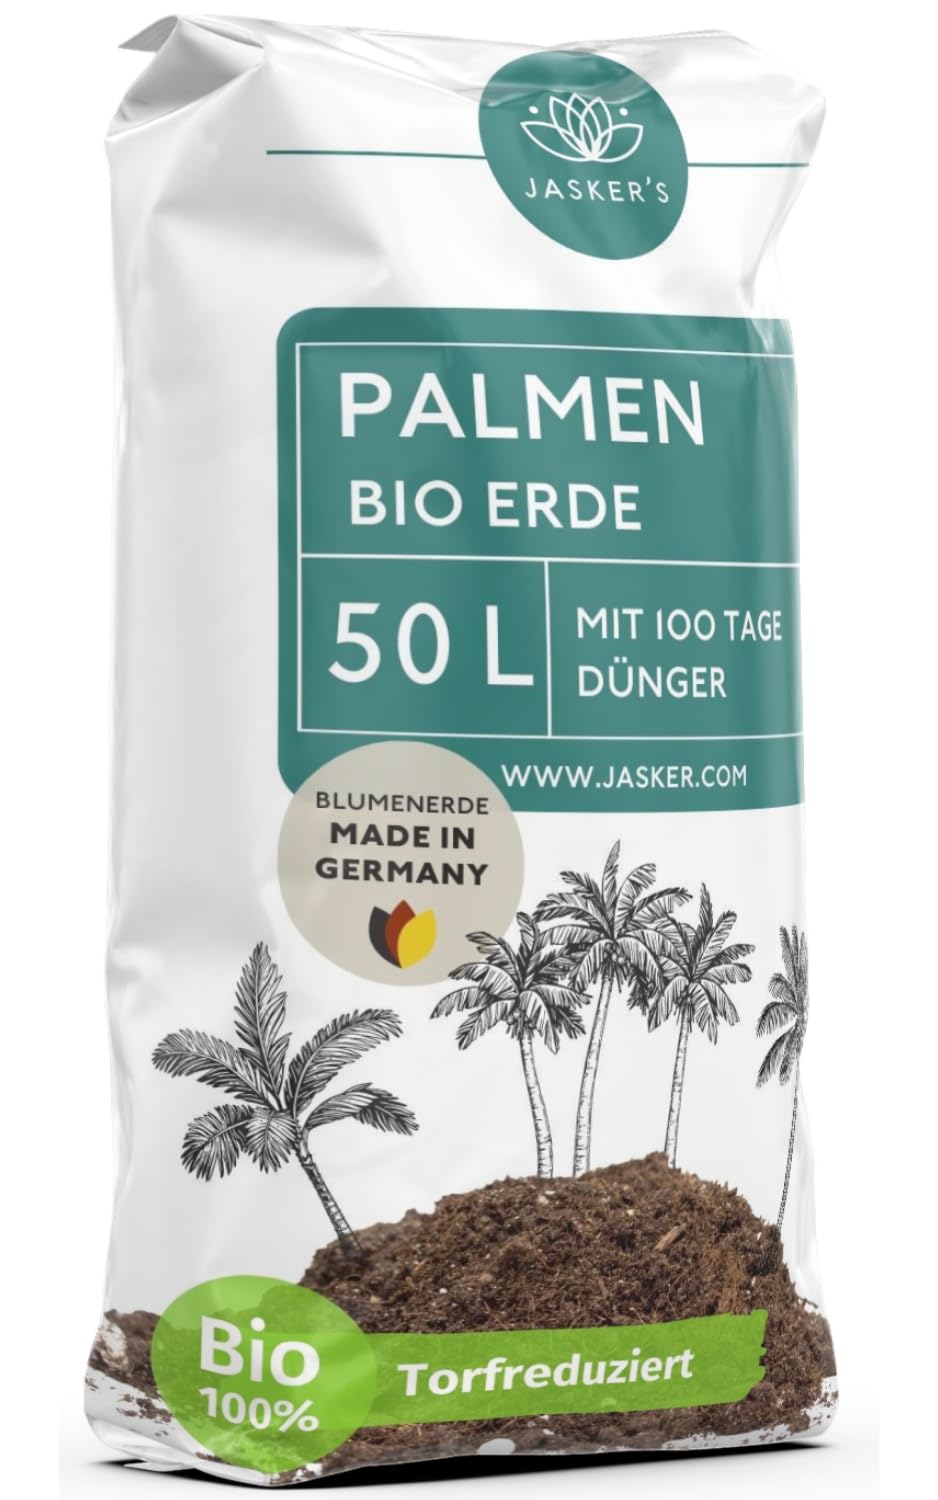 Bio Palmenerde 50 L - Blumenerde Zimmerpflanzen Erde aus 45% weniger Torf - Erde für Zimmerpflanzen mit Dünger - Zimmerpflanzenerde - Pflanzenerde Zimmerpflanzen - Erde für Pflanzen